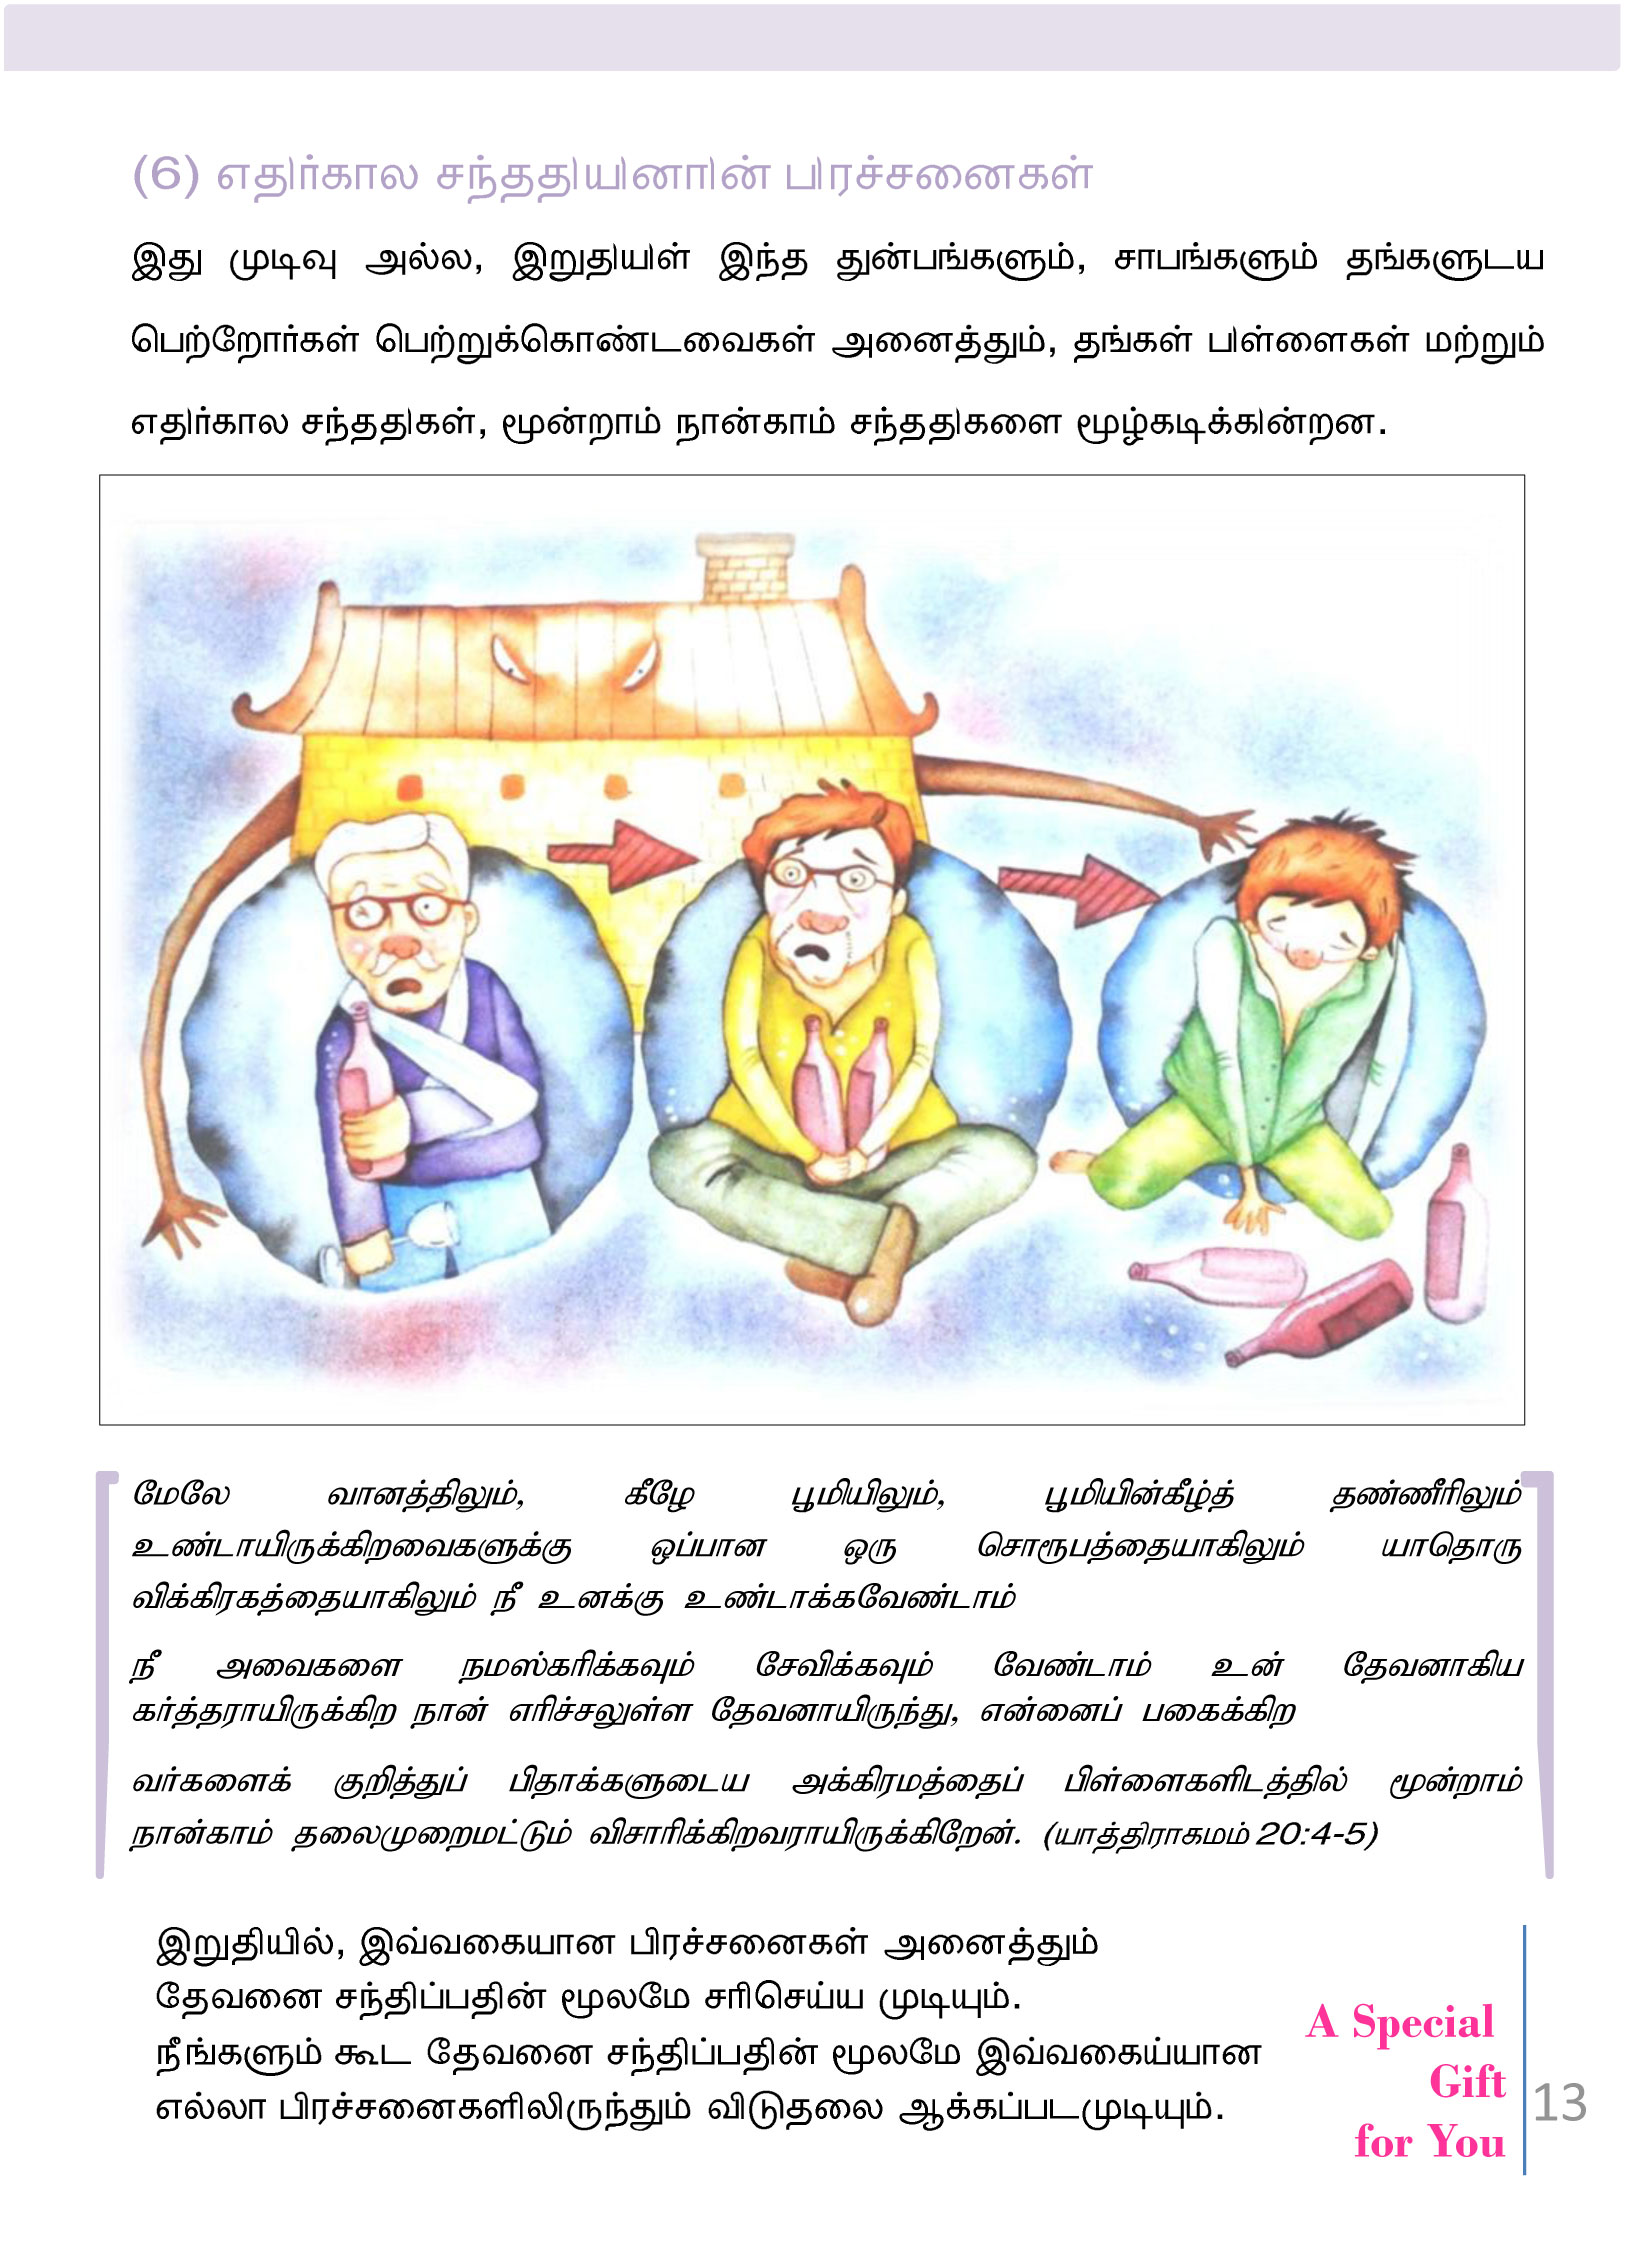 Tamil-Evangelism-Book-Pdf-3-13.jpg